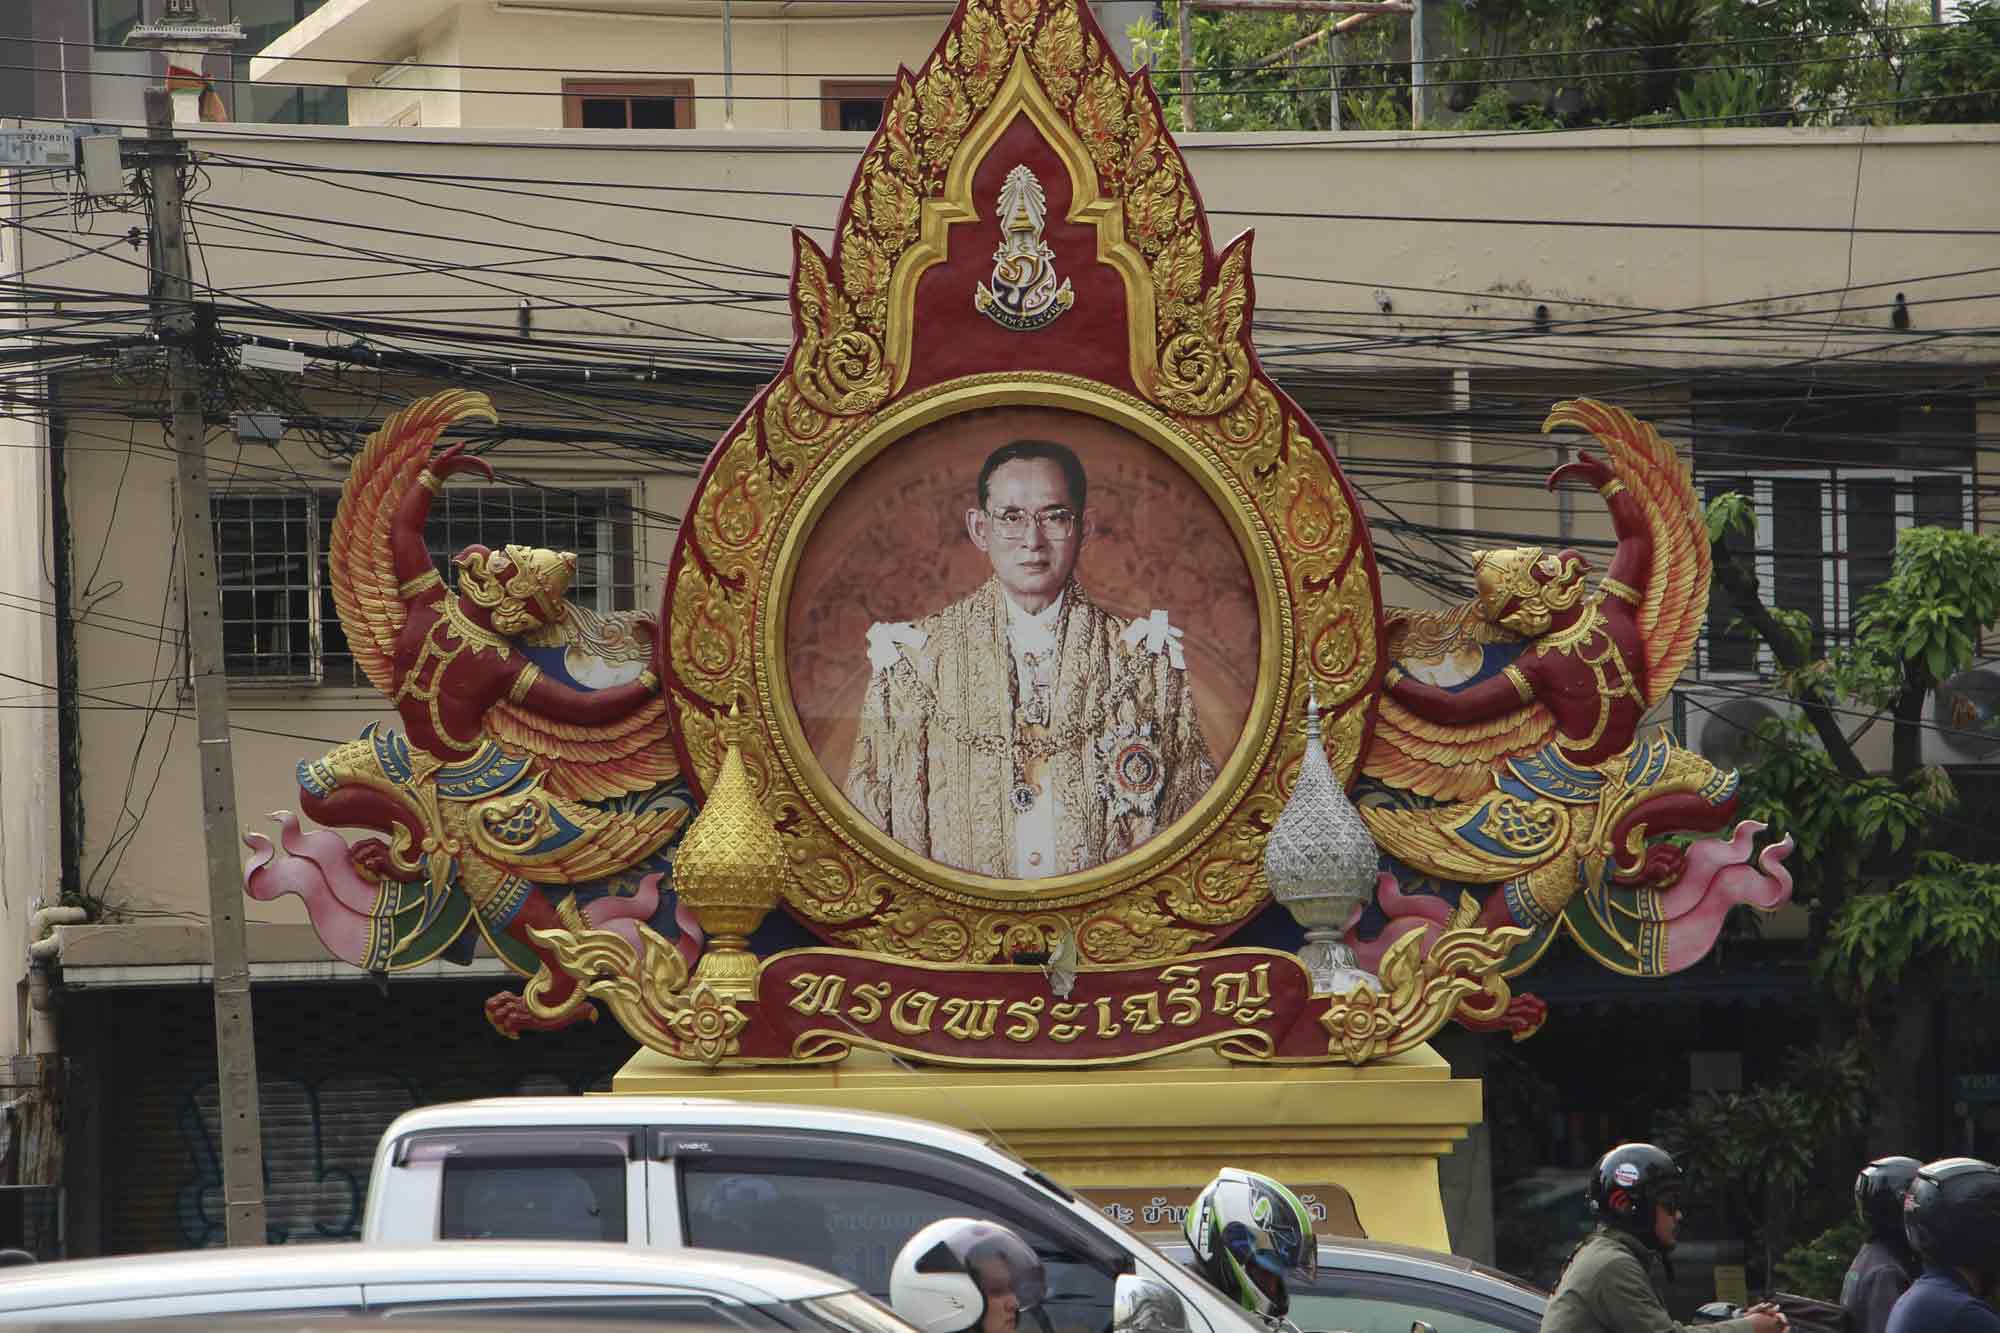 Fotografía de la figura del rey Bhumibol Adulyadej, reverenciado como un padre por muchos en Tailandia. EFE